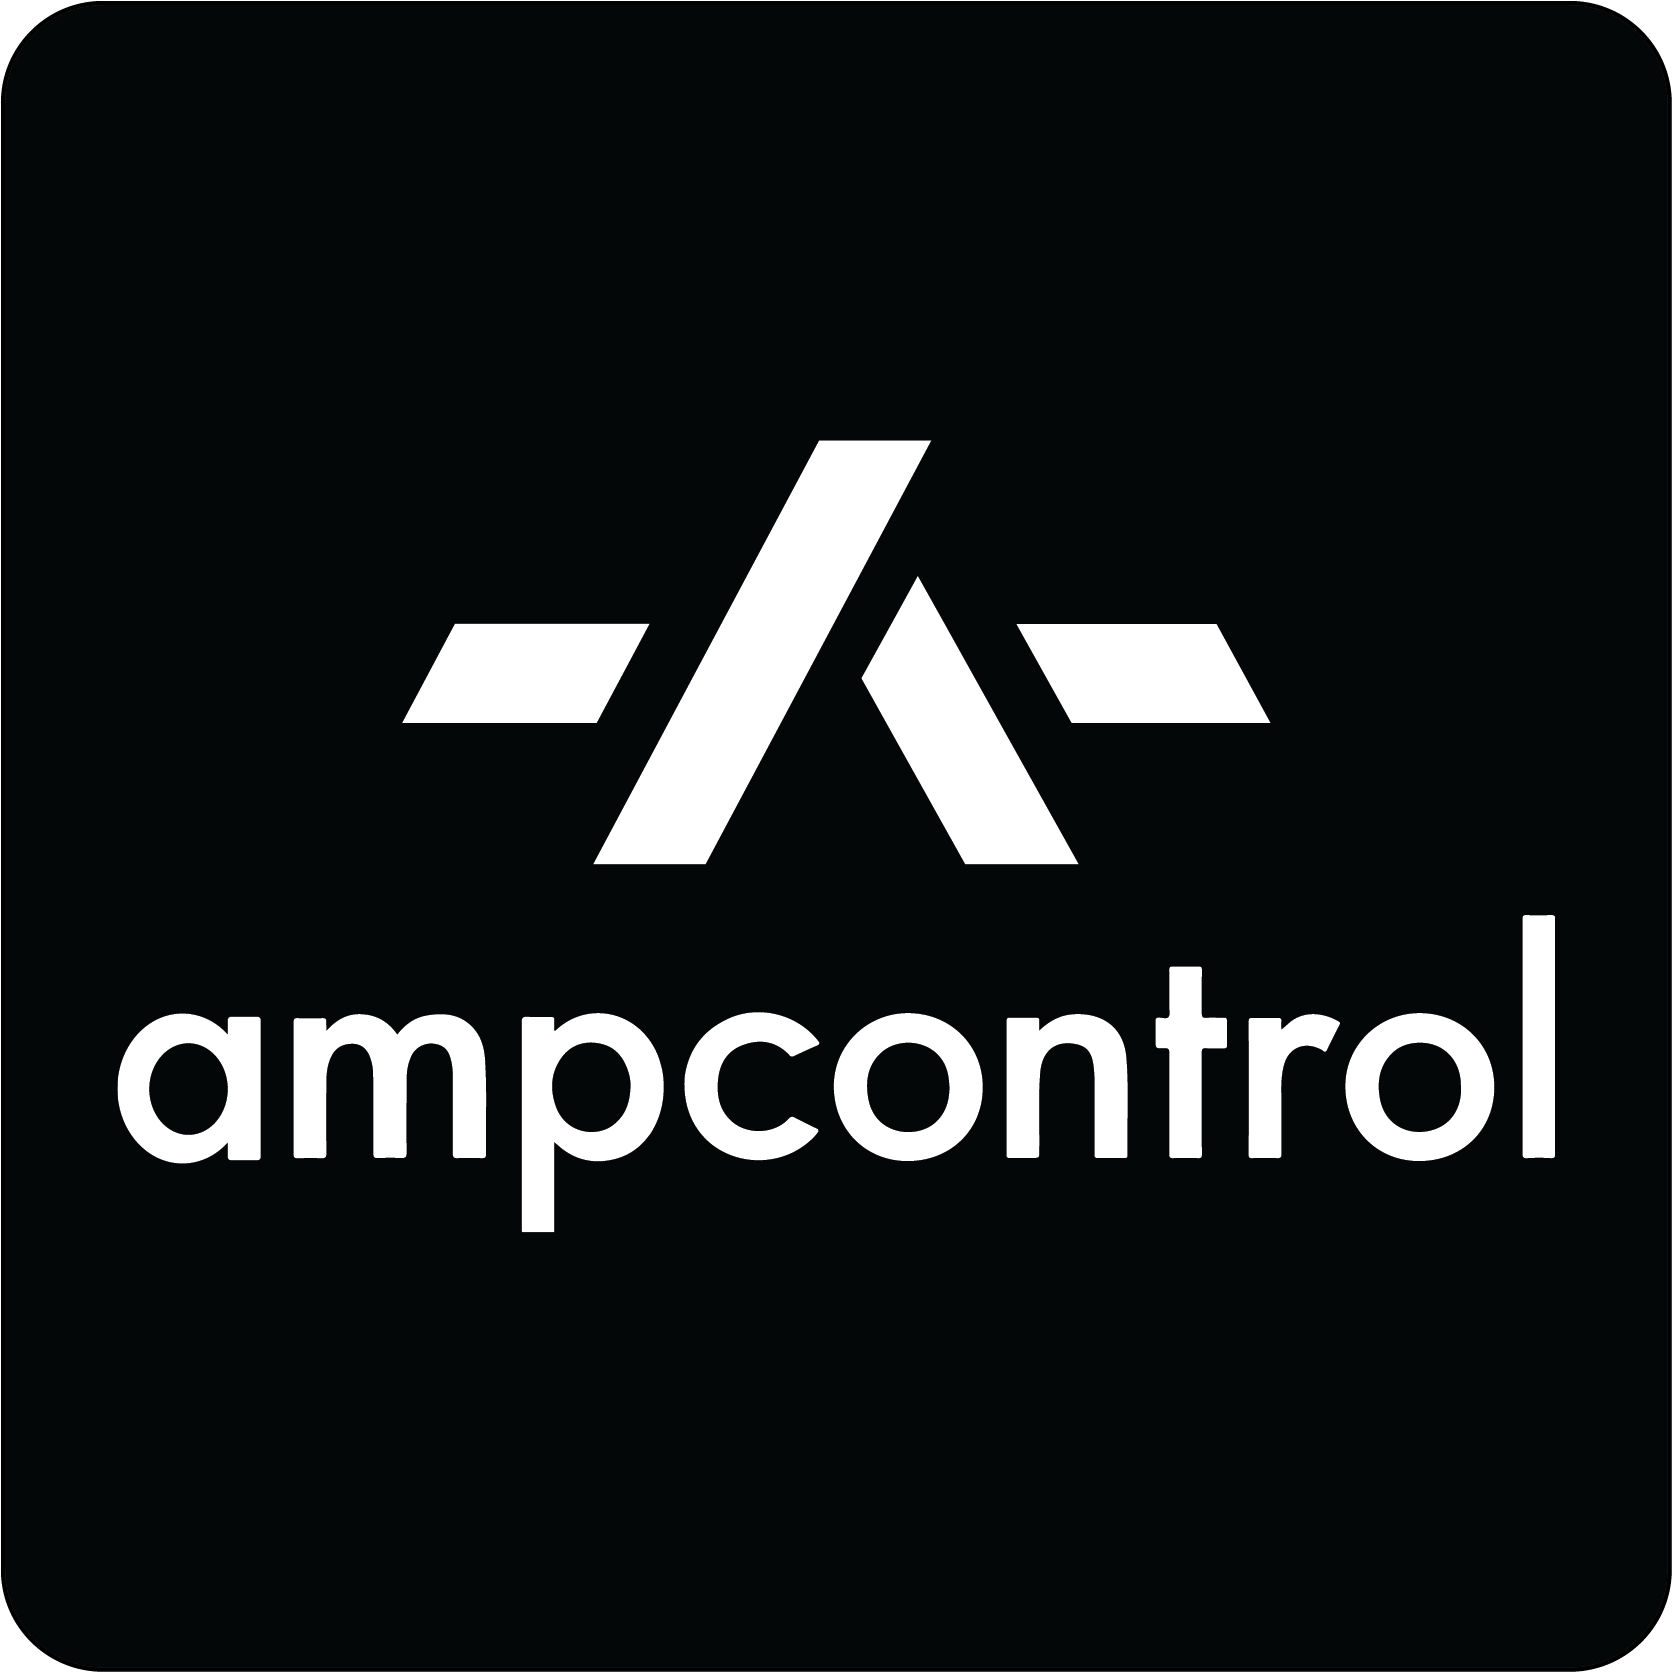 Ampcontrol